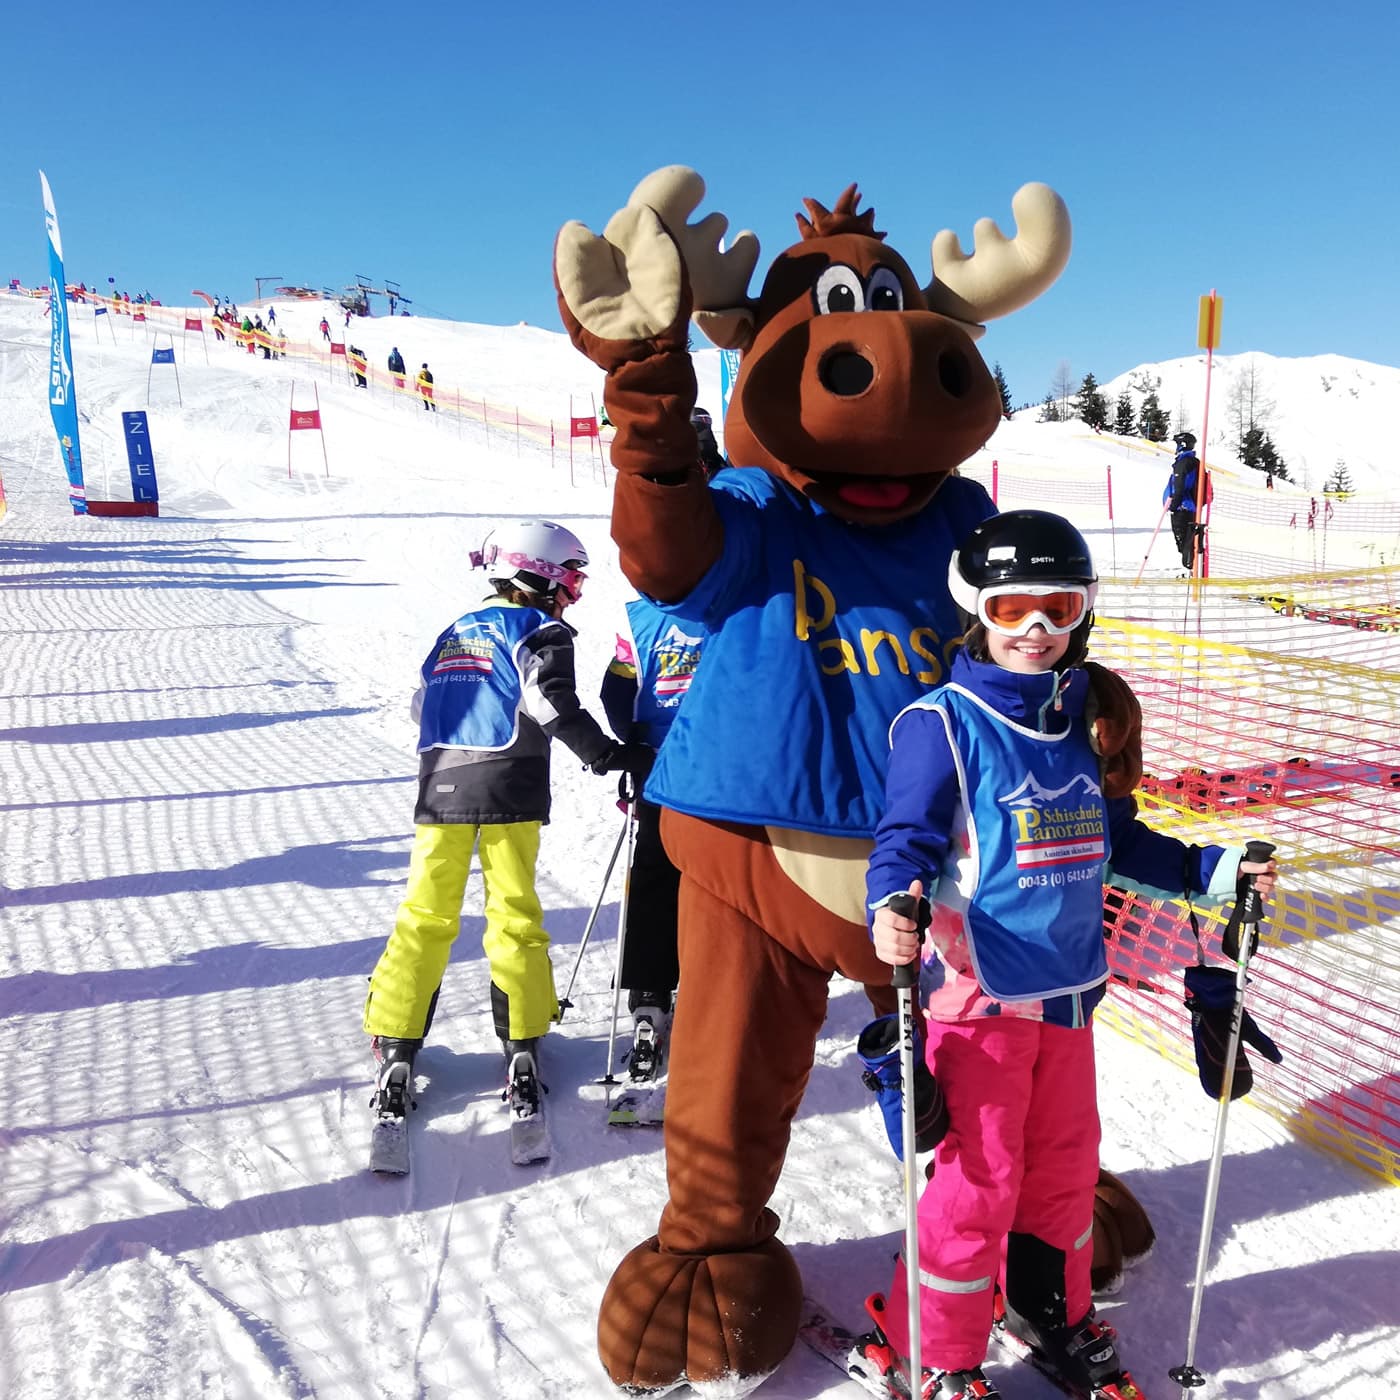 02 Kinder lernen Skifahren in der Skischule Panorama c Sandy Bossier Steuerwald 3552352